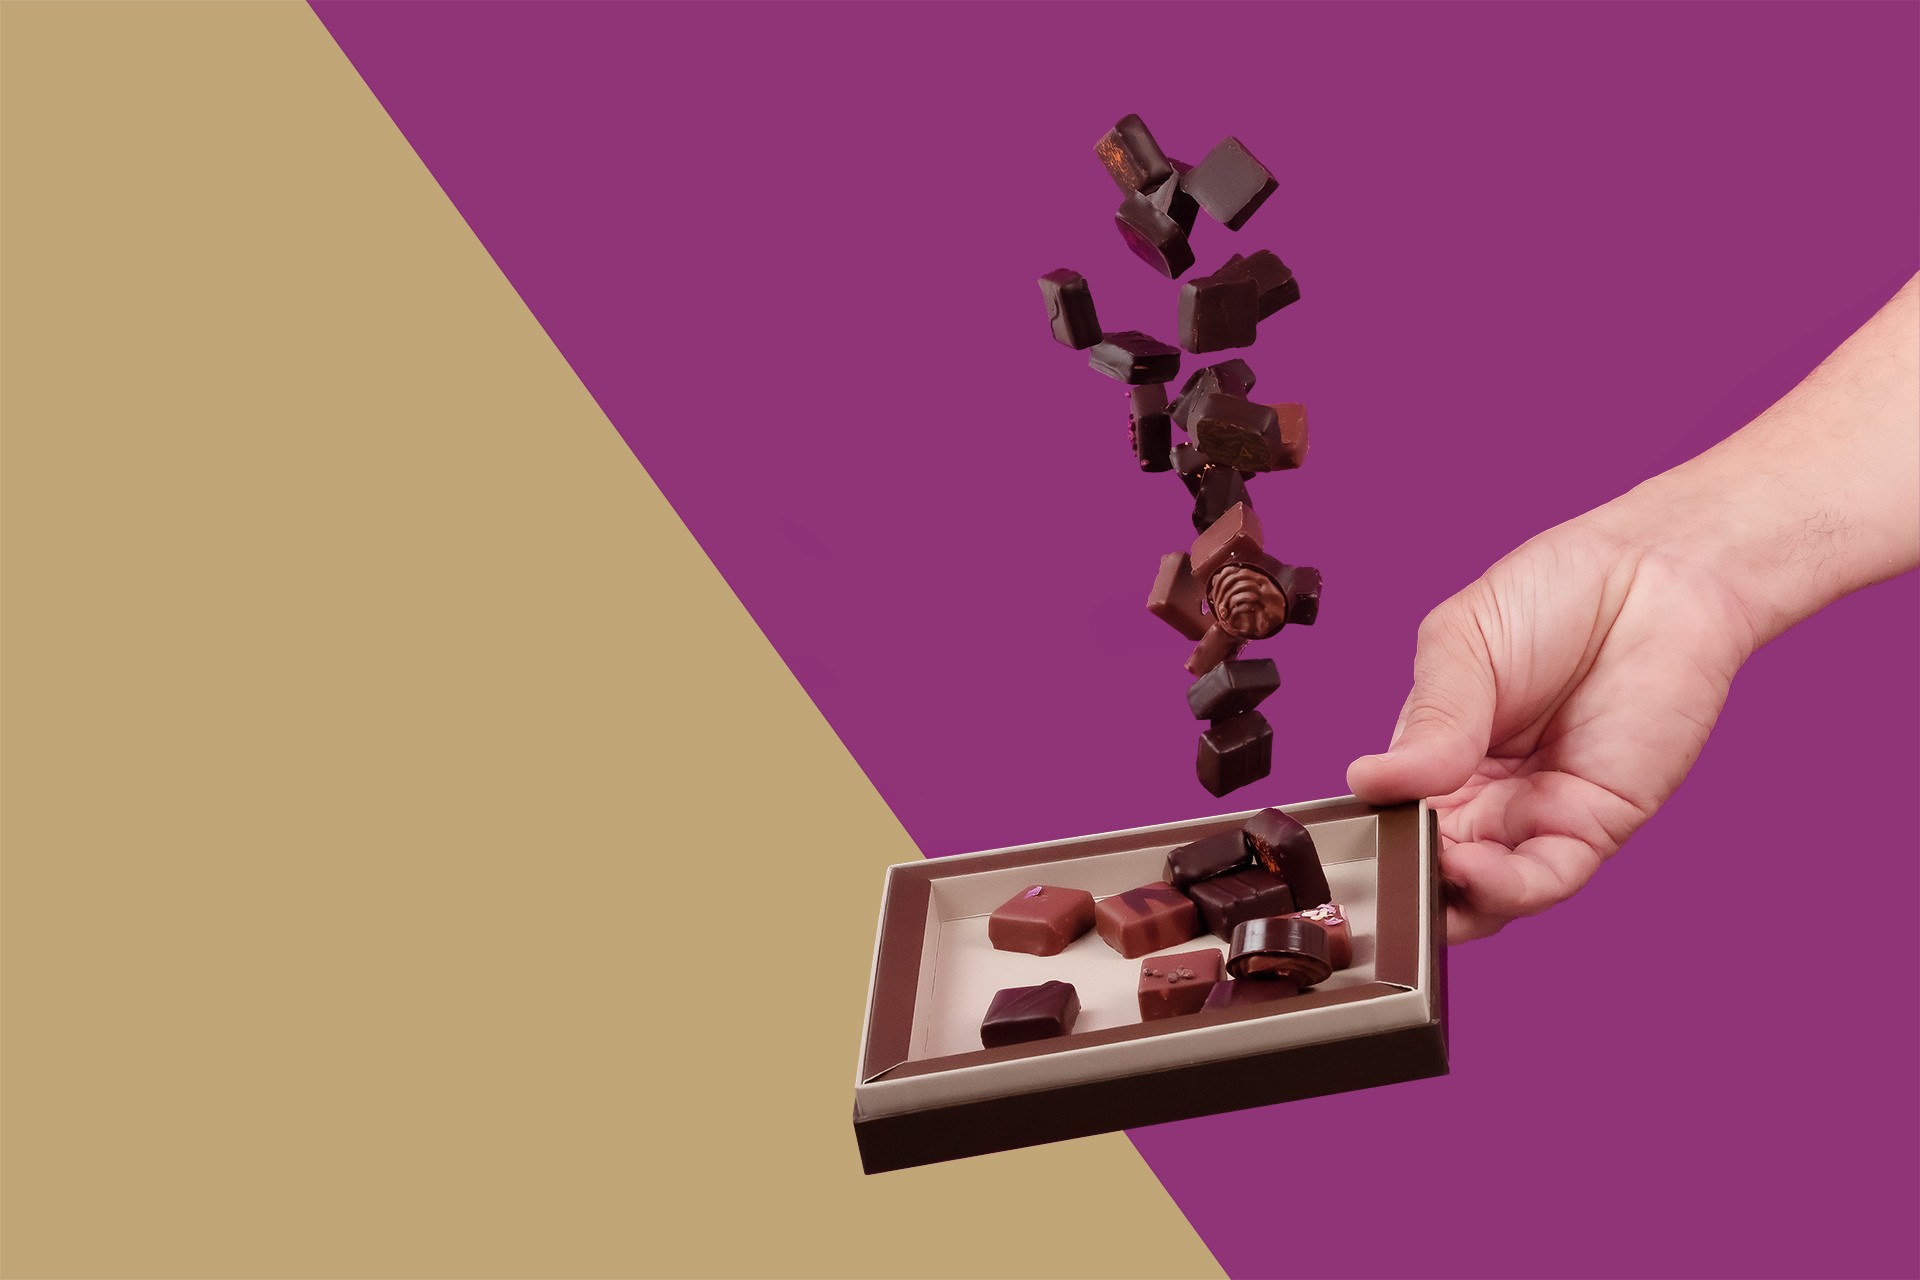 Coffret chocolat 2 niveaux : Les Signatures & Les Fruités  Maison Dufoux -  Artisan Chocolatier en Bourgogne et à Lyon